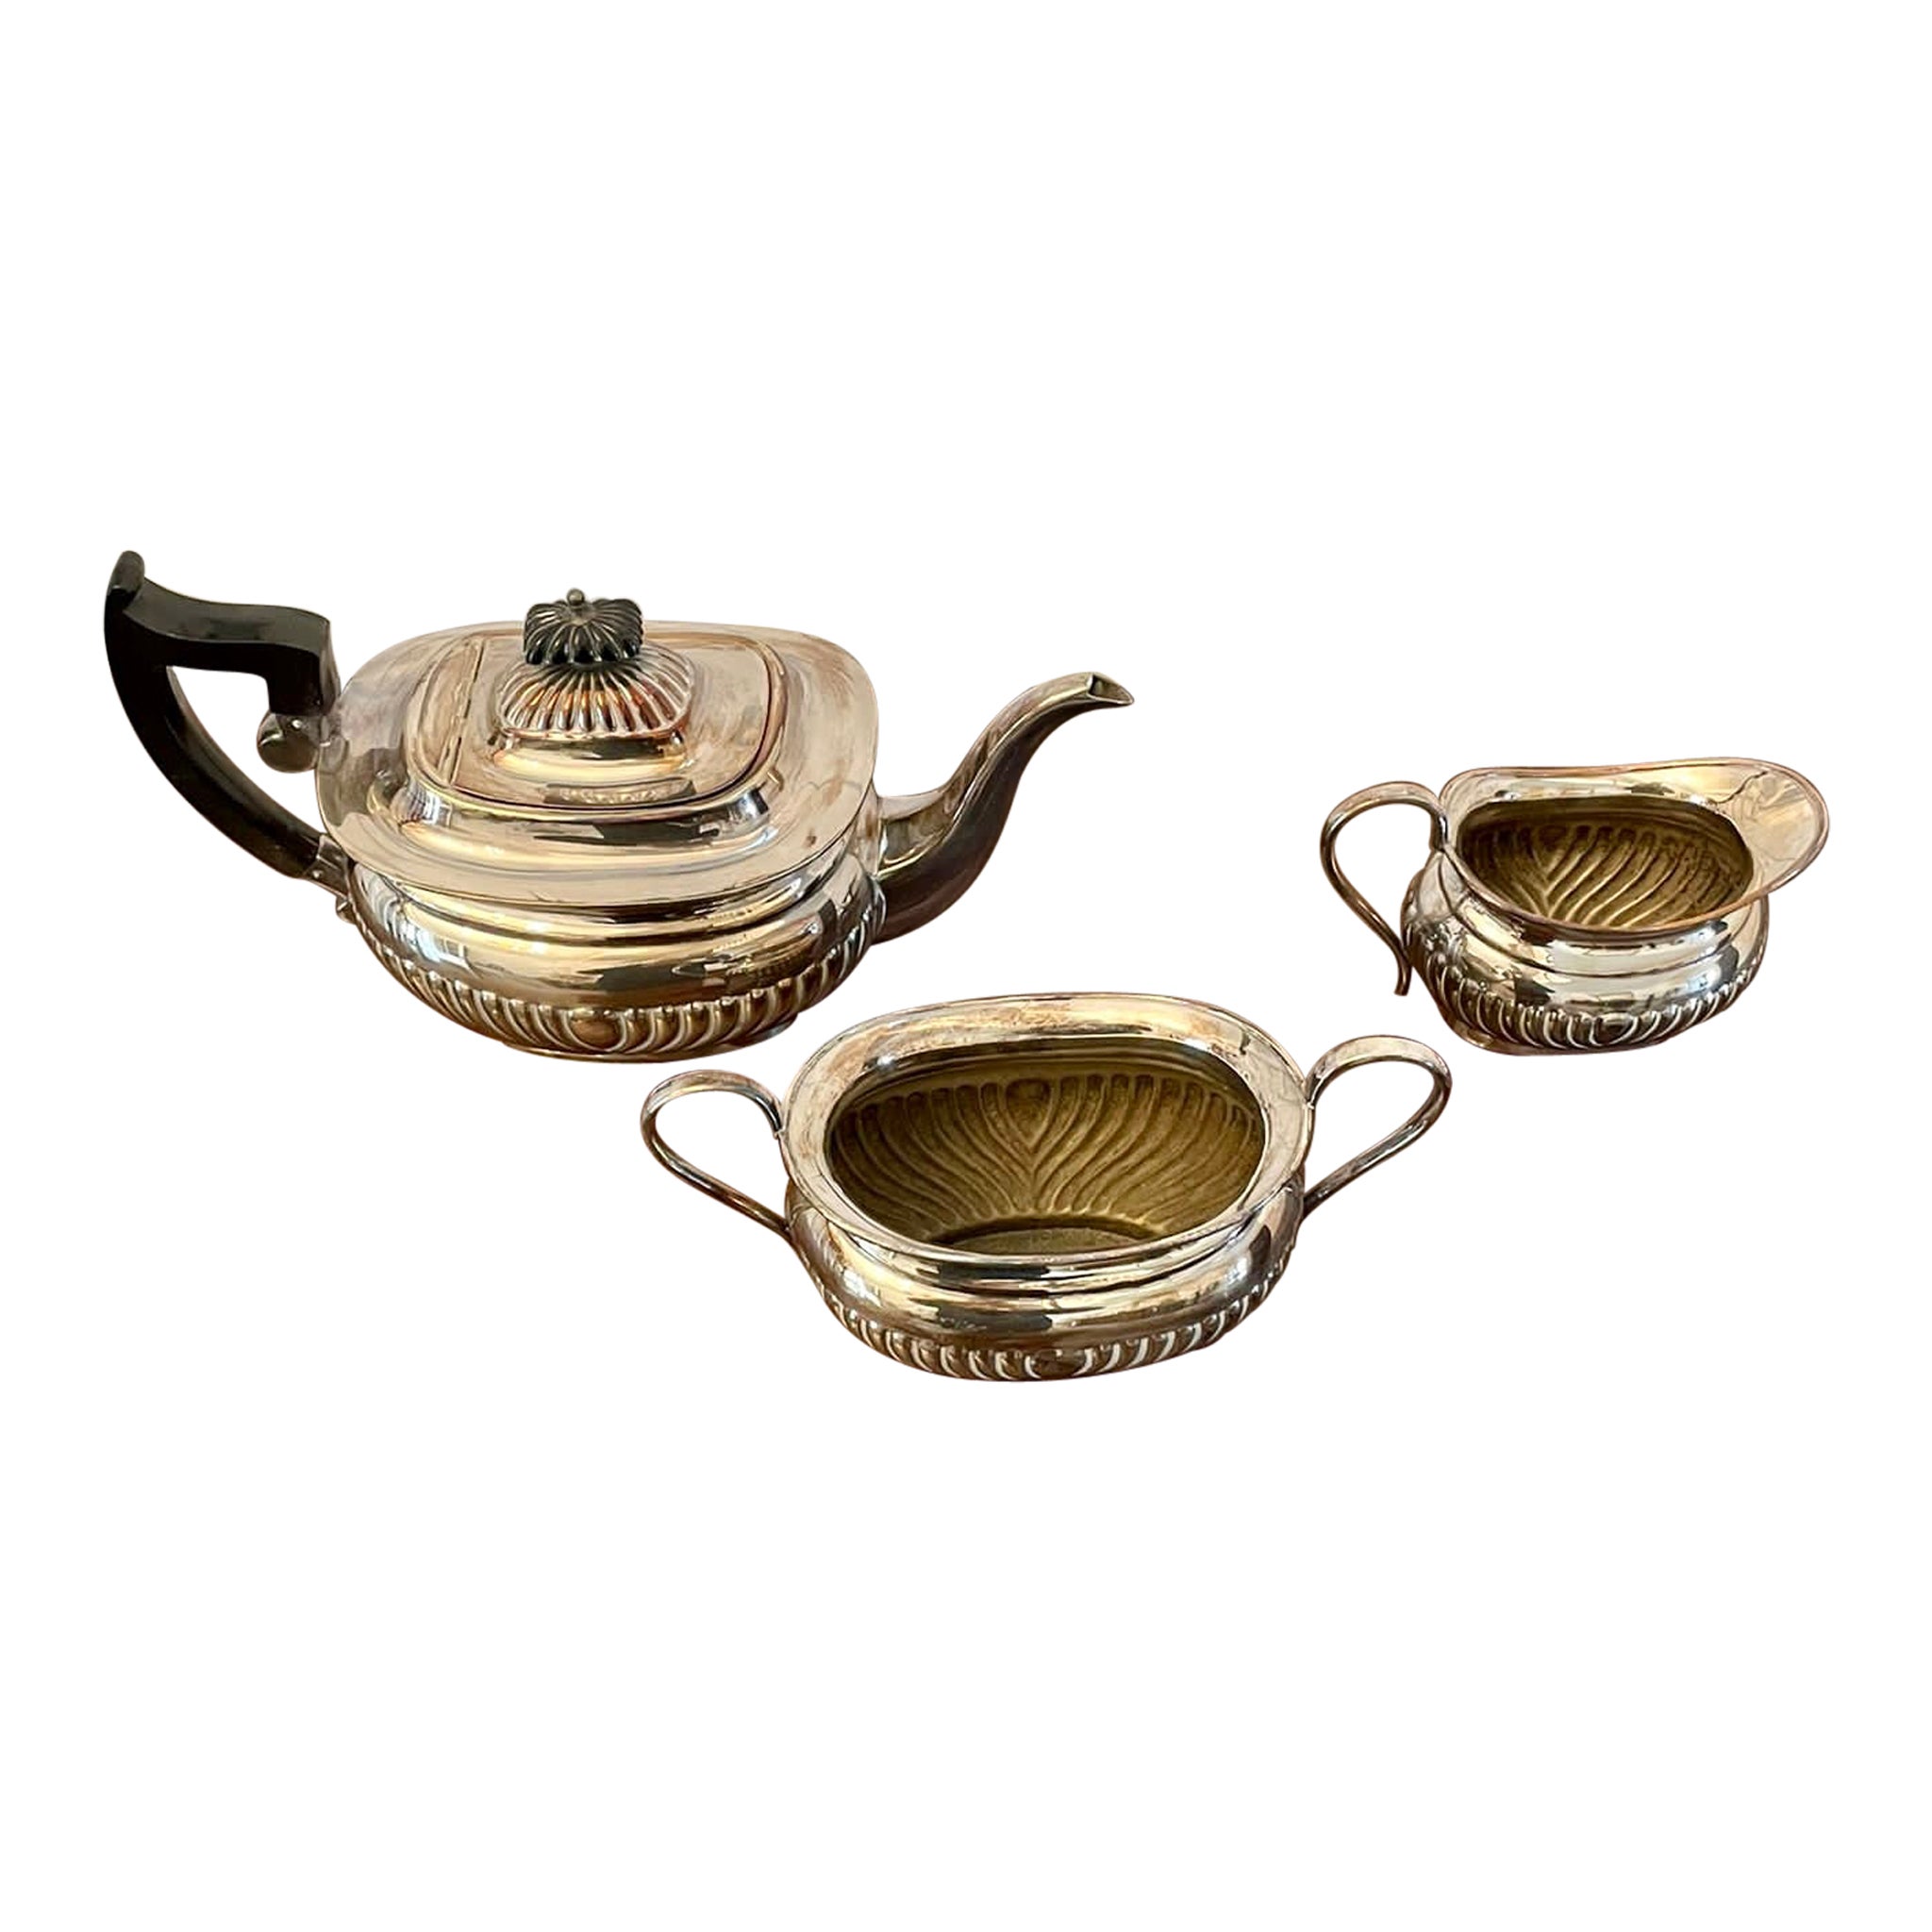  Antikes versilbertes Tee-Set in edwardianischer Qualität